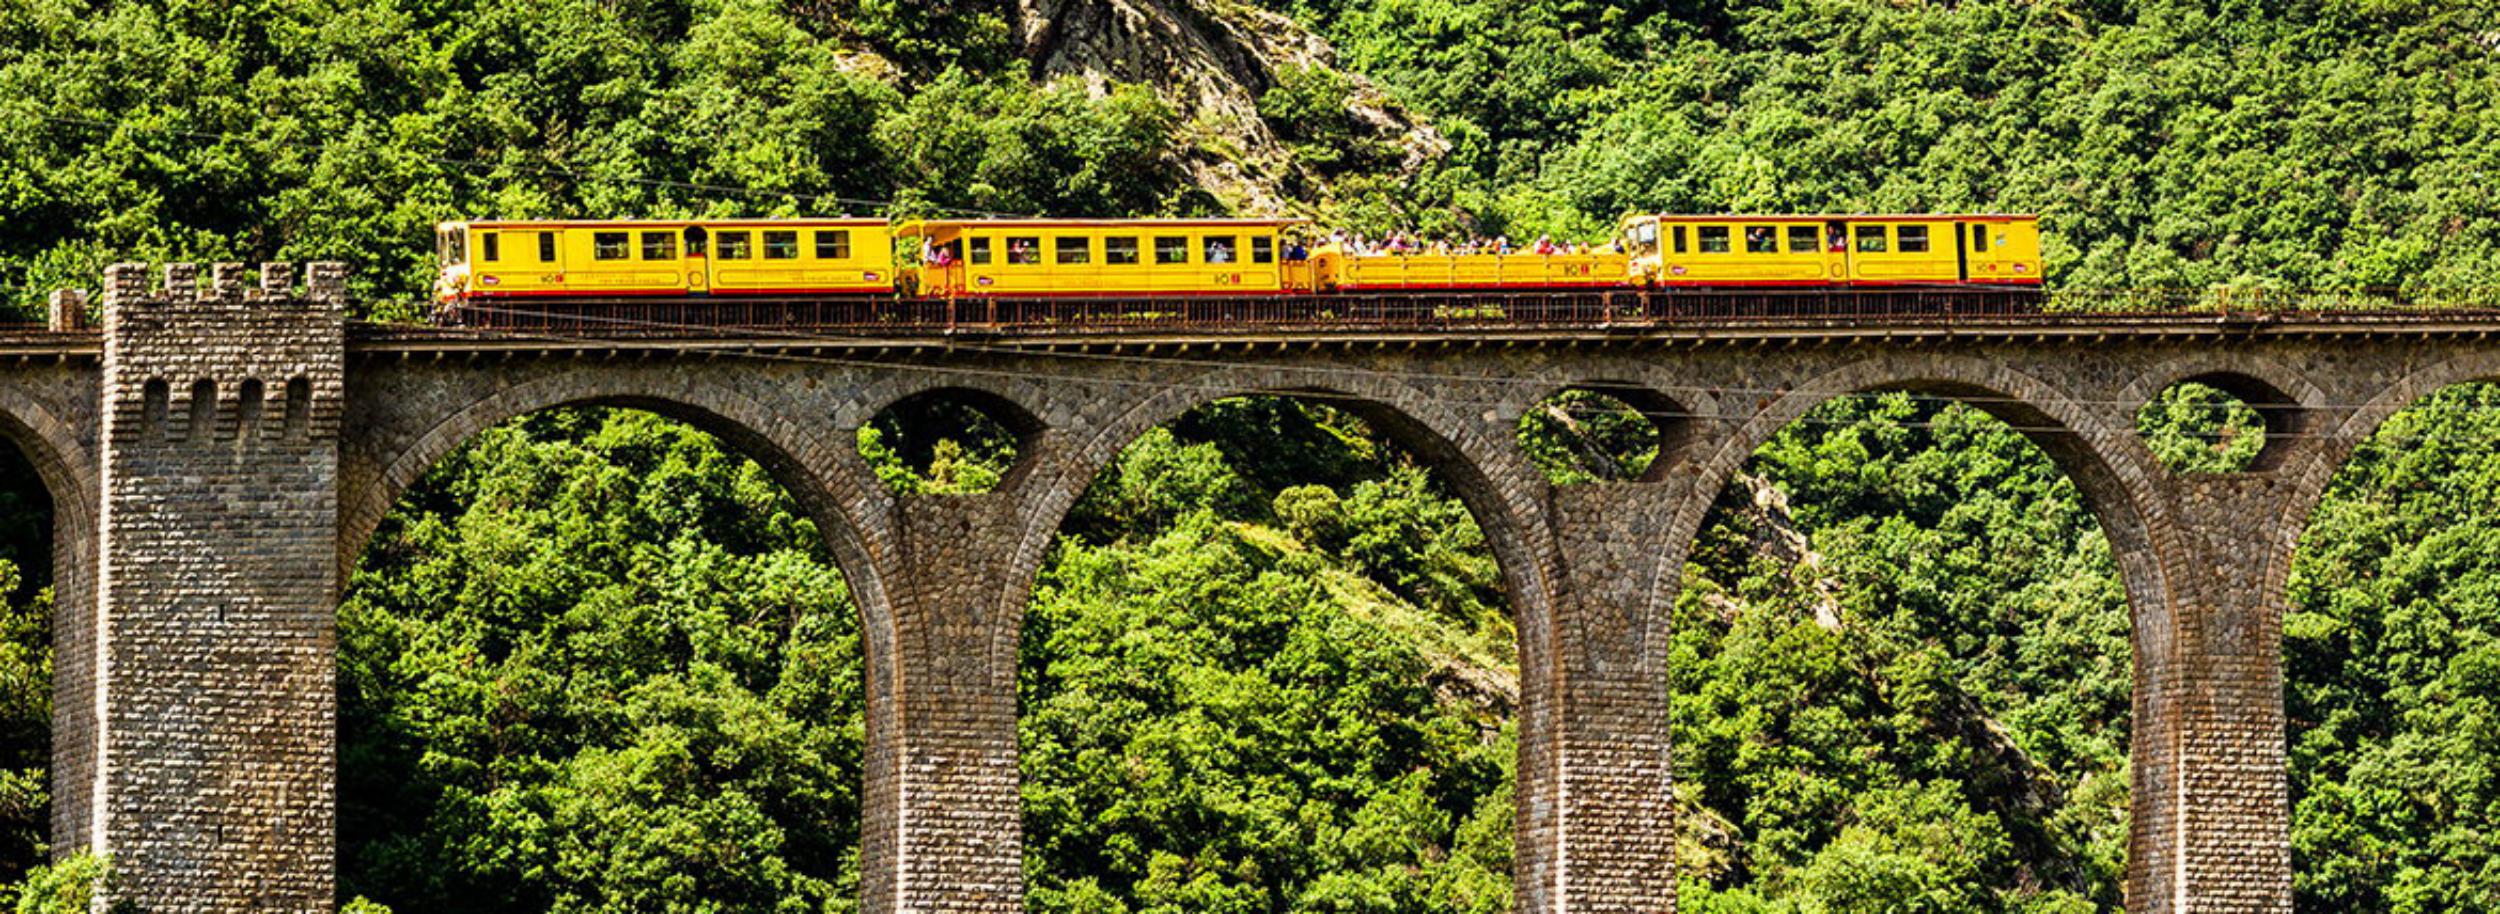 Le train jaune